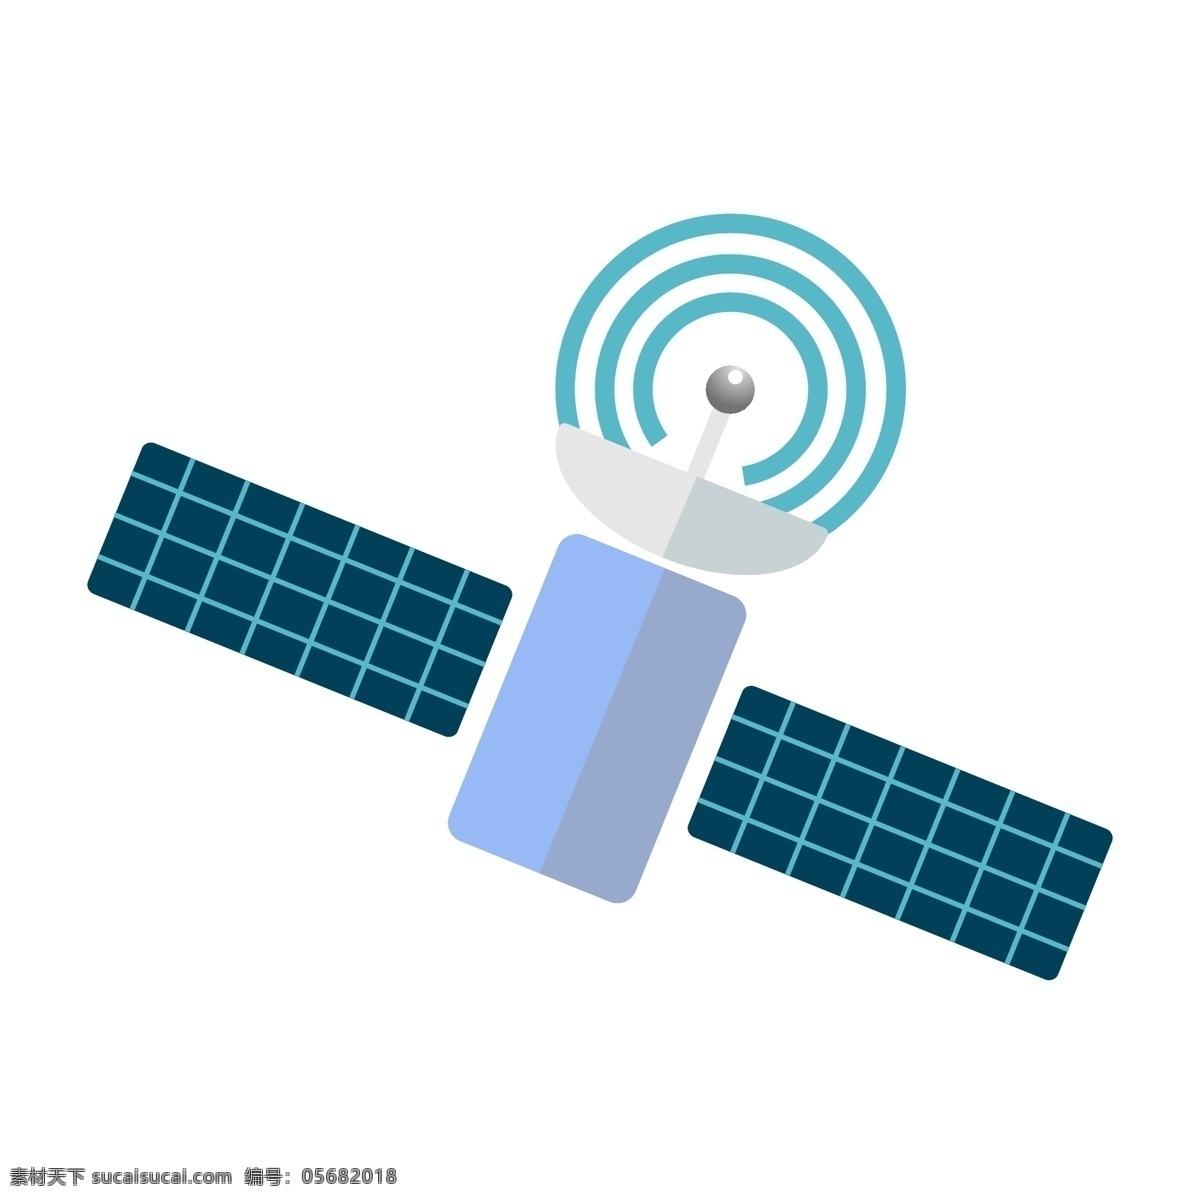 人造卫星 雷达 探测 卫星监测 雷达探测 卫星 雷达系统 科技航空 卫星平面图 航空科技